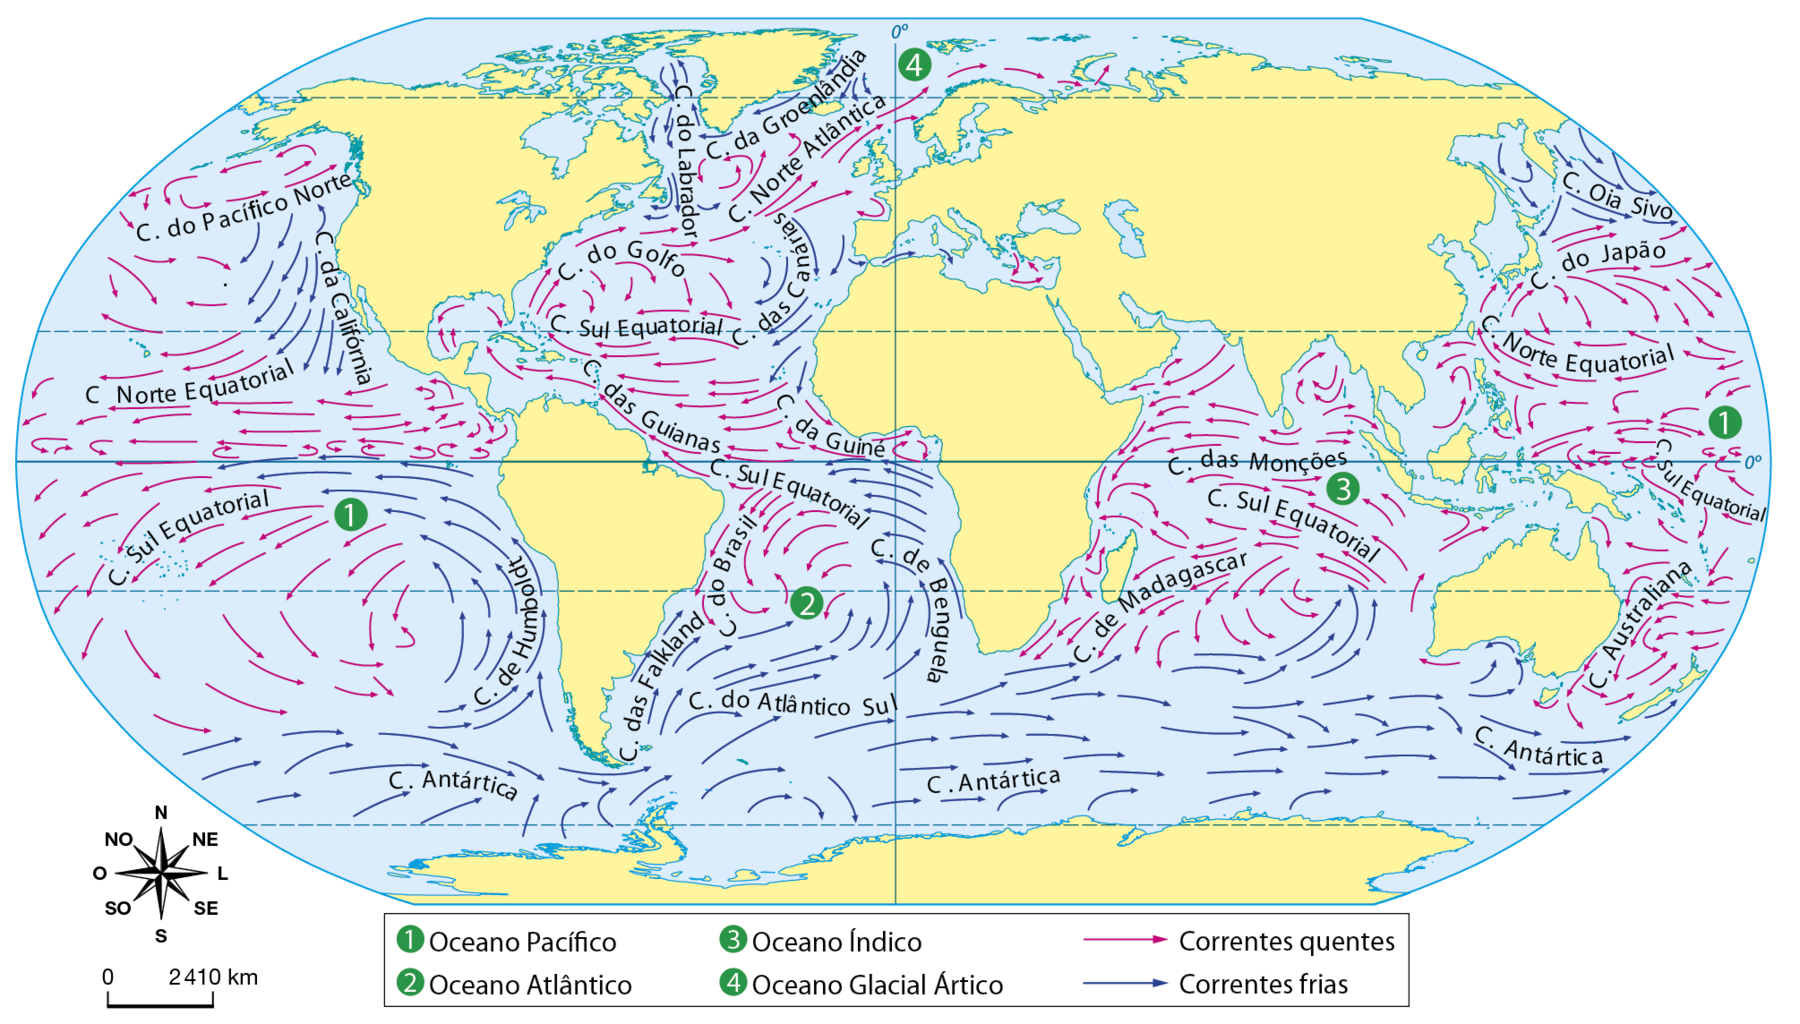 Mapa. Planisfério: Correntes Marítimas. O mapa representa as correntes marítimas quentes por setas vermelhas e as correntes marítimas frias por setas azuis. Oceano Pacífico: Correntes marítimas quentes. Corrente do Pacífico Norte, Corrente Norte Equatorial, Corrente Sul Equatorial, Corrente do Japão e Corrente Australiana. Correntes marítimas frias: Corrente da Califórnia, Corrente Oia Sivo, Corrente de Humboldt e Corrente Antártica. Oceano Atlântico: Correntes marítimas quentes. Corrente Norte Atlântica, Corrente do Golfo, Corrente Sul Equatorial, Corrente das Guianas  e Corrente da Guiné. Correntes marítimas frias:  Corrente do Labrador, Corrente da Groenlândia, Corrente das Canárias, Corrente de Benguela, Corrente das Falklands, Corrente do Atlântico Sul e a Corrente Antártica. Oceano Índico: Correntes marítimas quentes. Corrente das Monções, Corrente Sul Equatorial e Corrente de Madagascar. Corrente marítima fria. Corrente Antártica. Oceano Ártico: Corrente marítima quente. Norte Atlântica Correntes marítimas frias: Corrente do Labrador e Corrente da Groenlândia. Abaixo, rosa dos ventos e escala de 0 a 2.410 quilômetros.